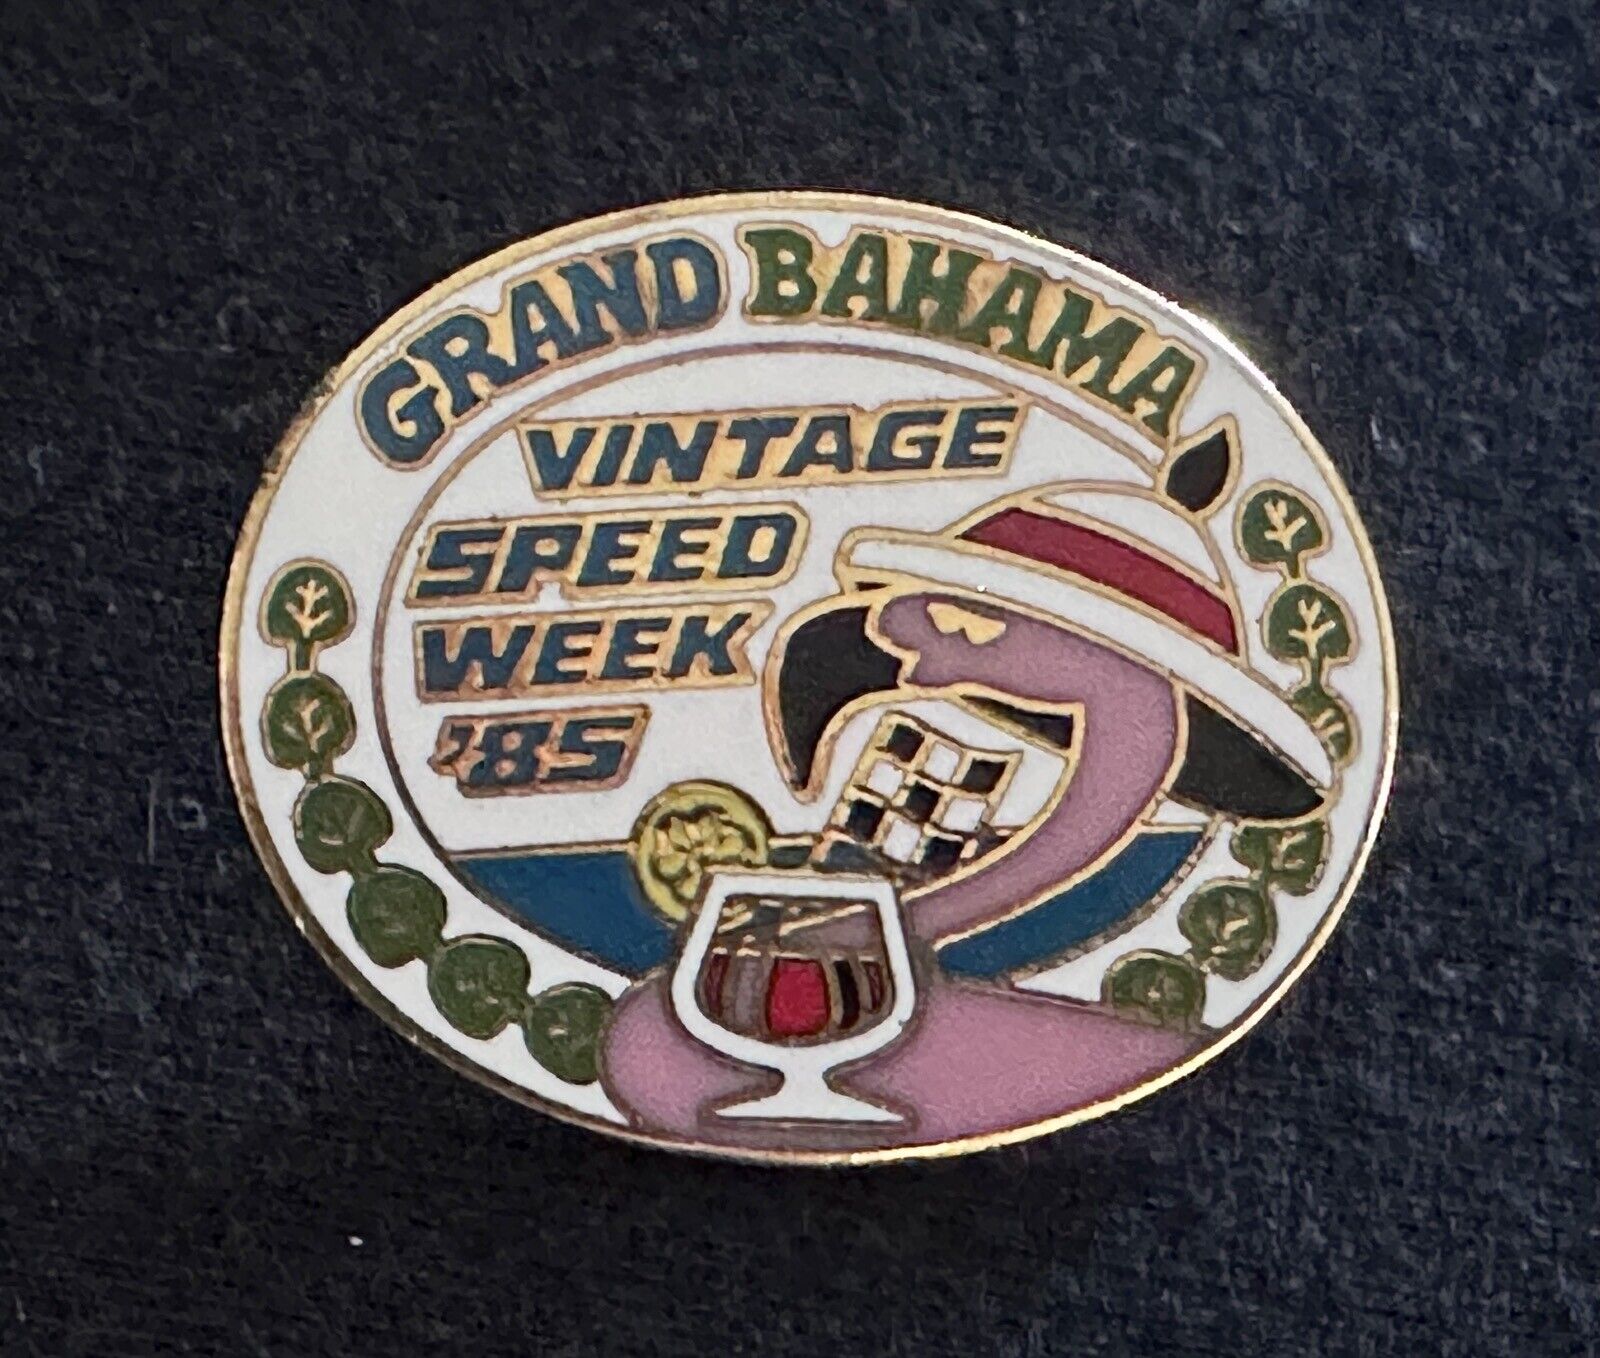 1985 Grand Bahamas Vintage Speed Week Lapel Pin Hat Pin EXC